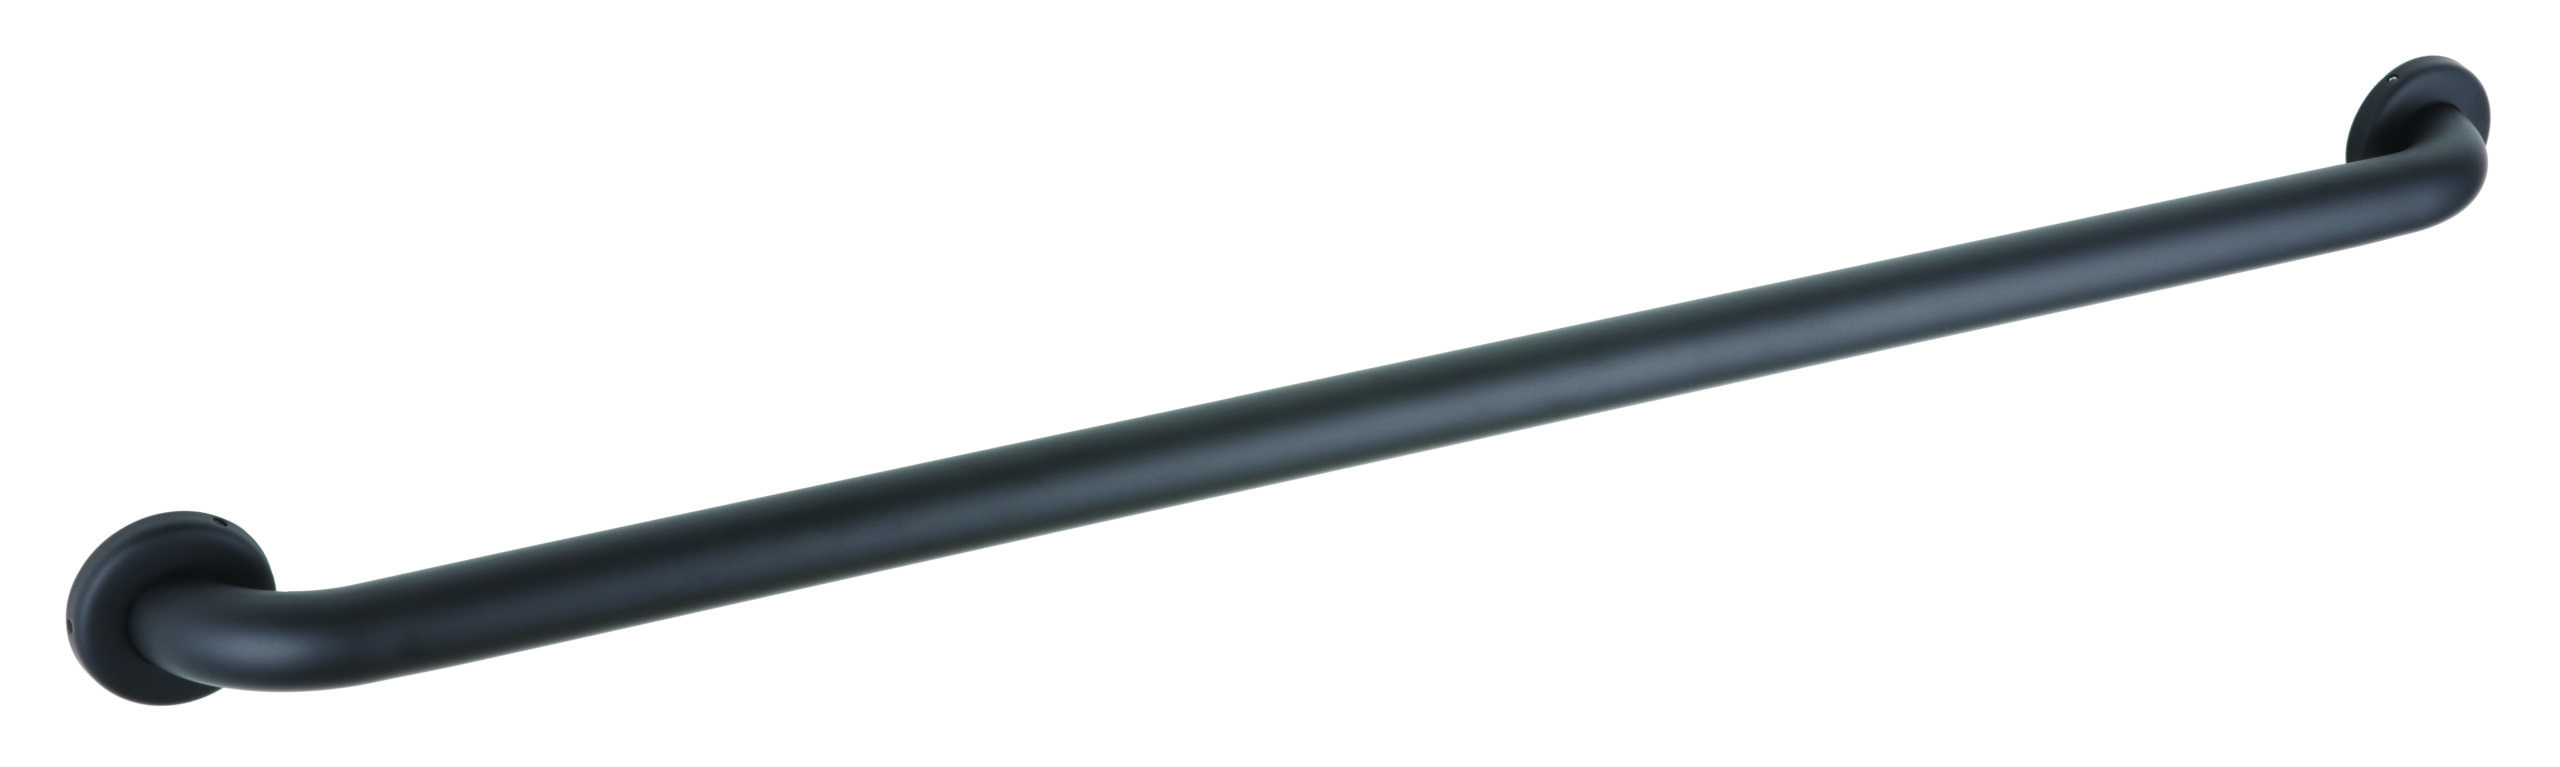 1.5 Inch Diameter Straight Grab Bar with Concealed Flange, Matte Black - (Model #: 150c.mblk-series-concealed)-image